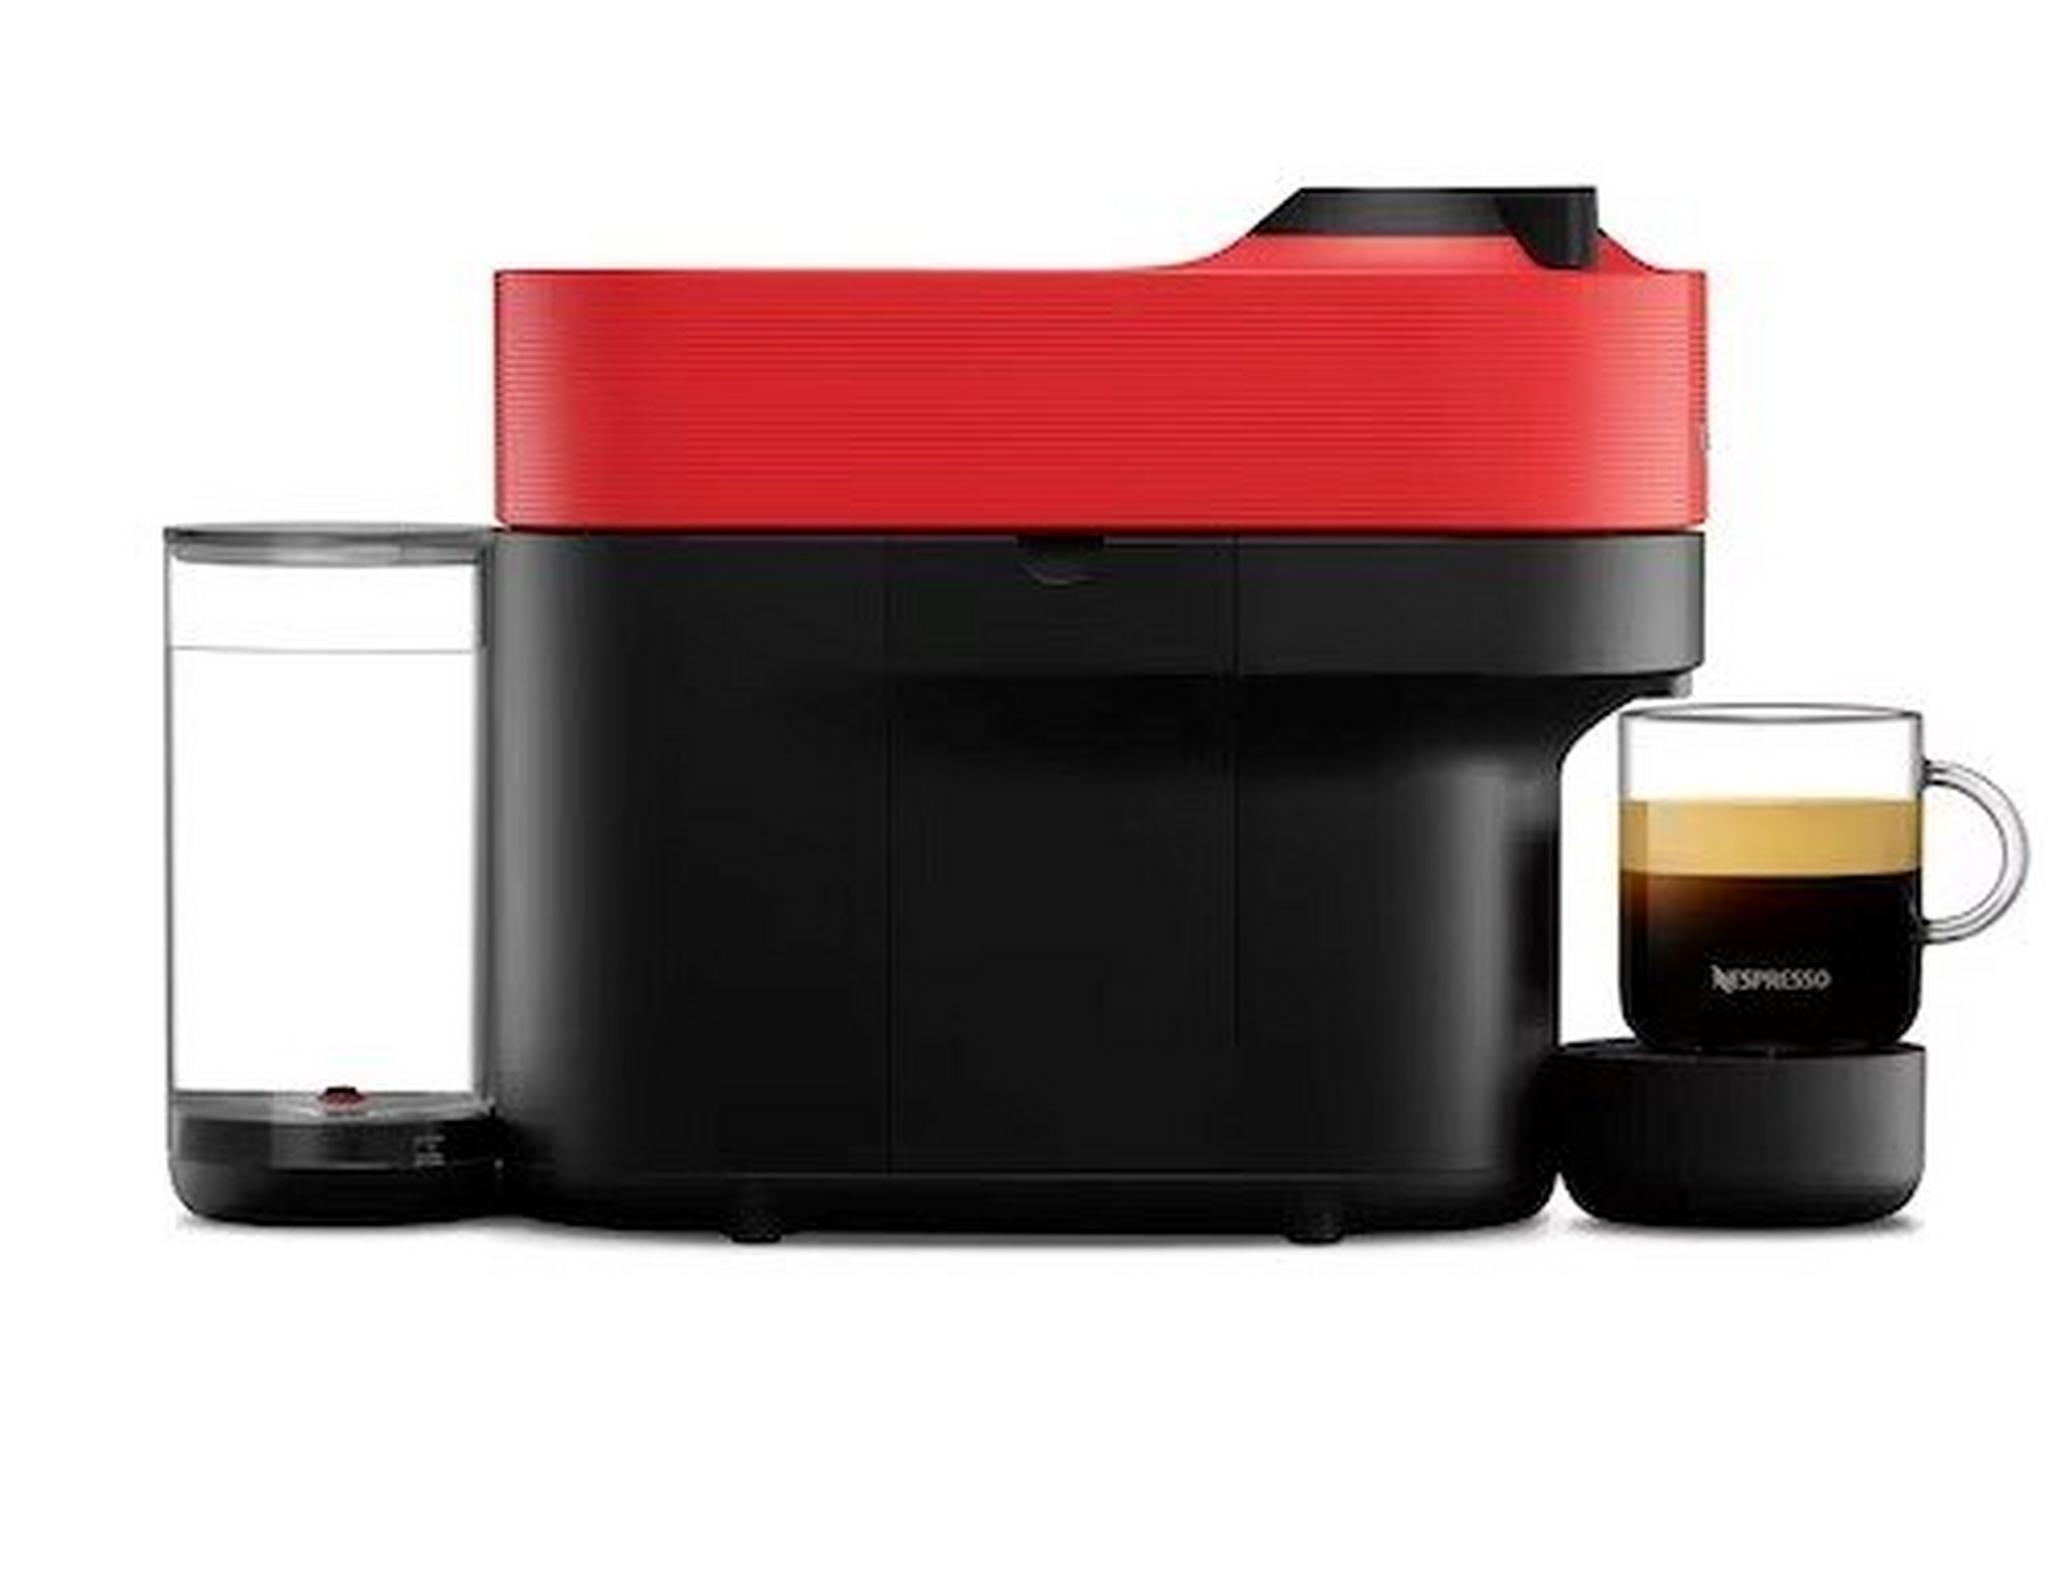 ماكينة تحضير القهوة ڤيرتو بوب من نيسبريسو، GCV2-GB-RE-NE – أحمر غامق